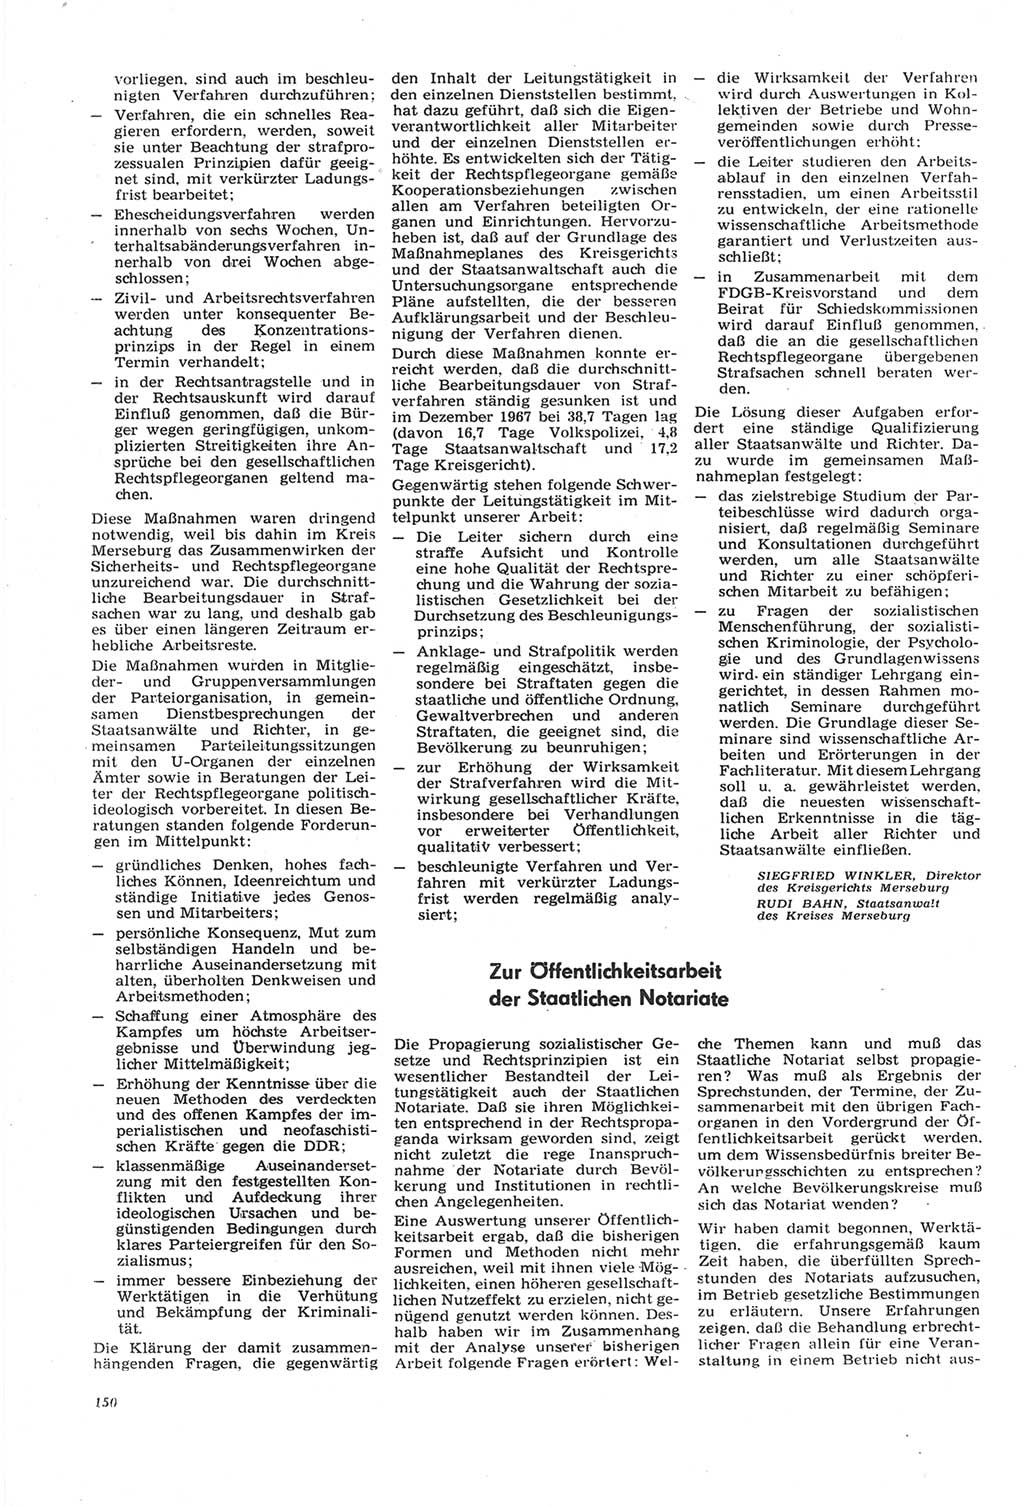 Neue Justiz (NJ), Zeitschrift für Recht und Rechtswissenschaft [Deutsche Demokratische Republik (DDR)], 22. Jahrgang 1968, Seite 150 (NJ DDR 1968, S. 150)